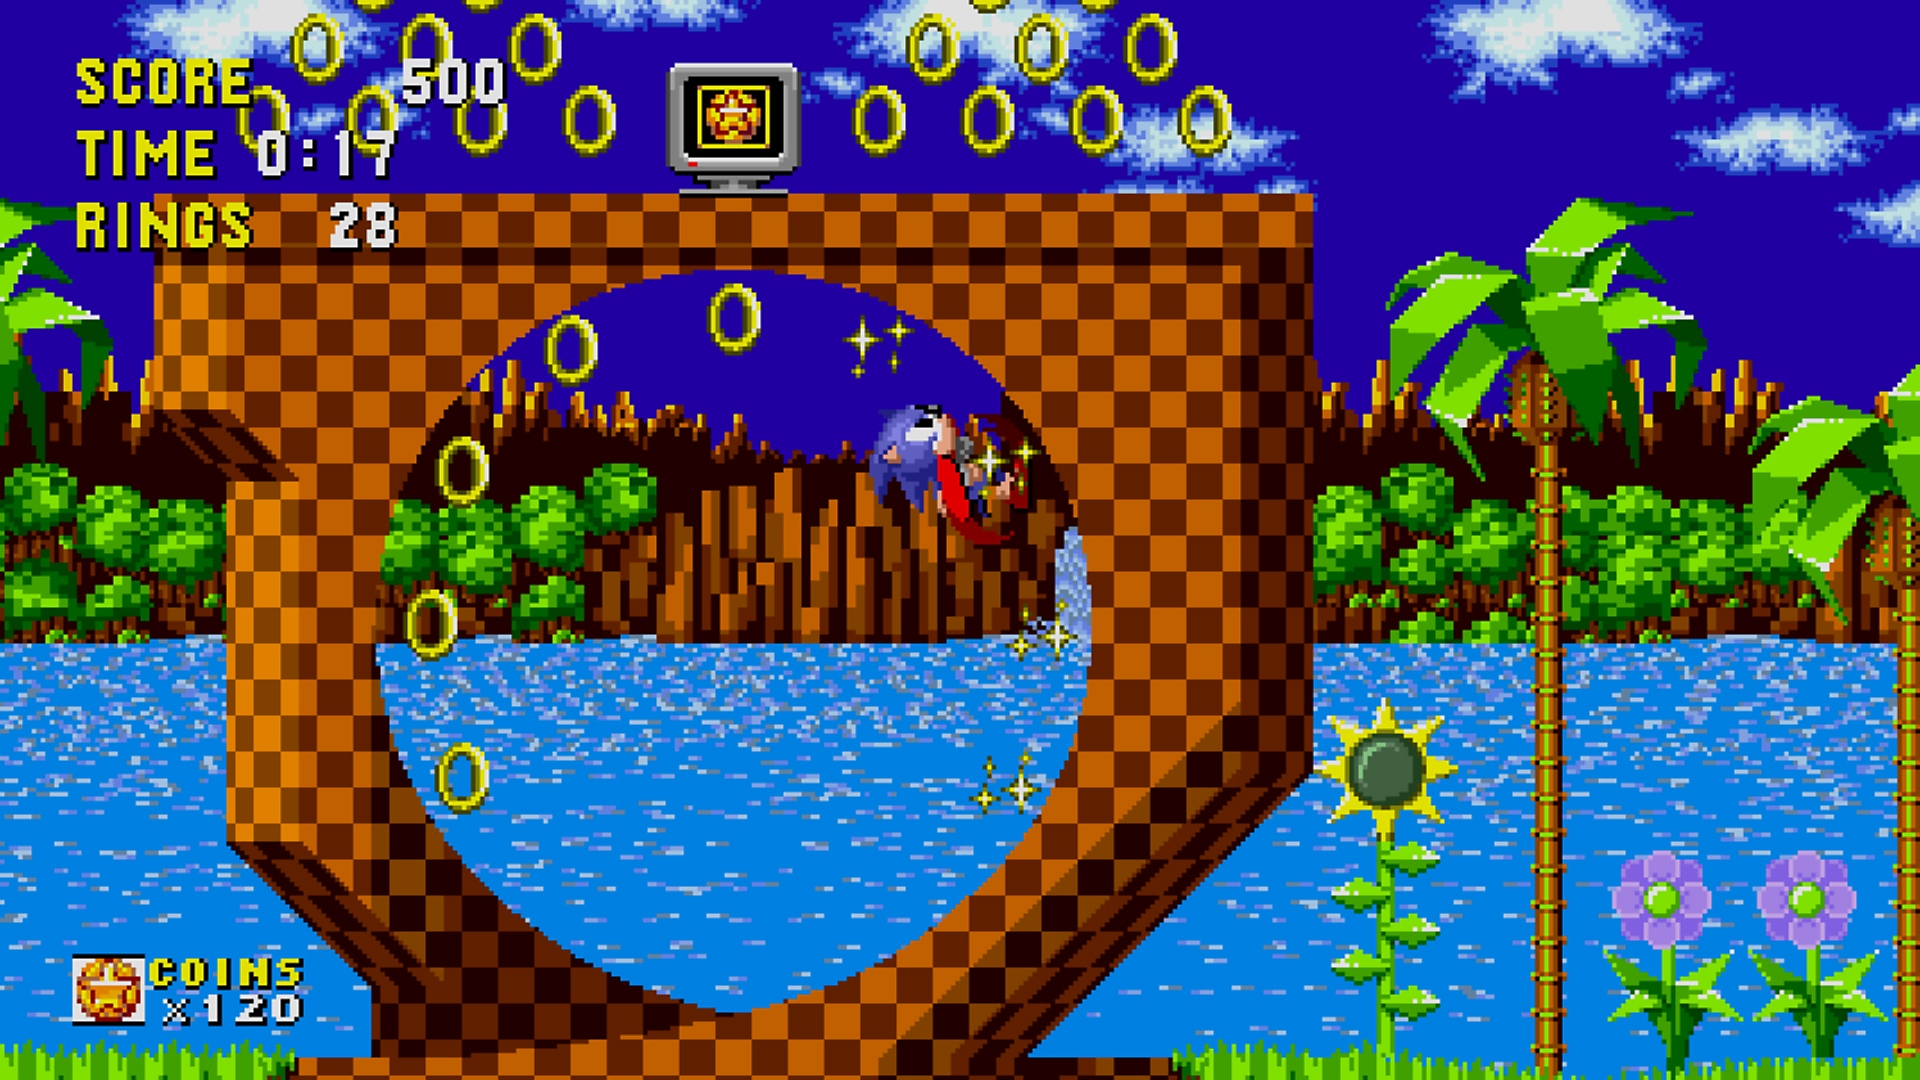 Snimka zaslona iz igre Sonic Origins koja prikazuje sliku ranije verzije razine Green Hill Zone u formatu 16:9